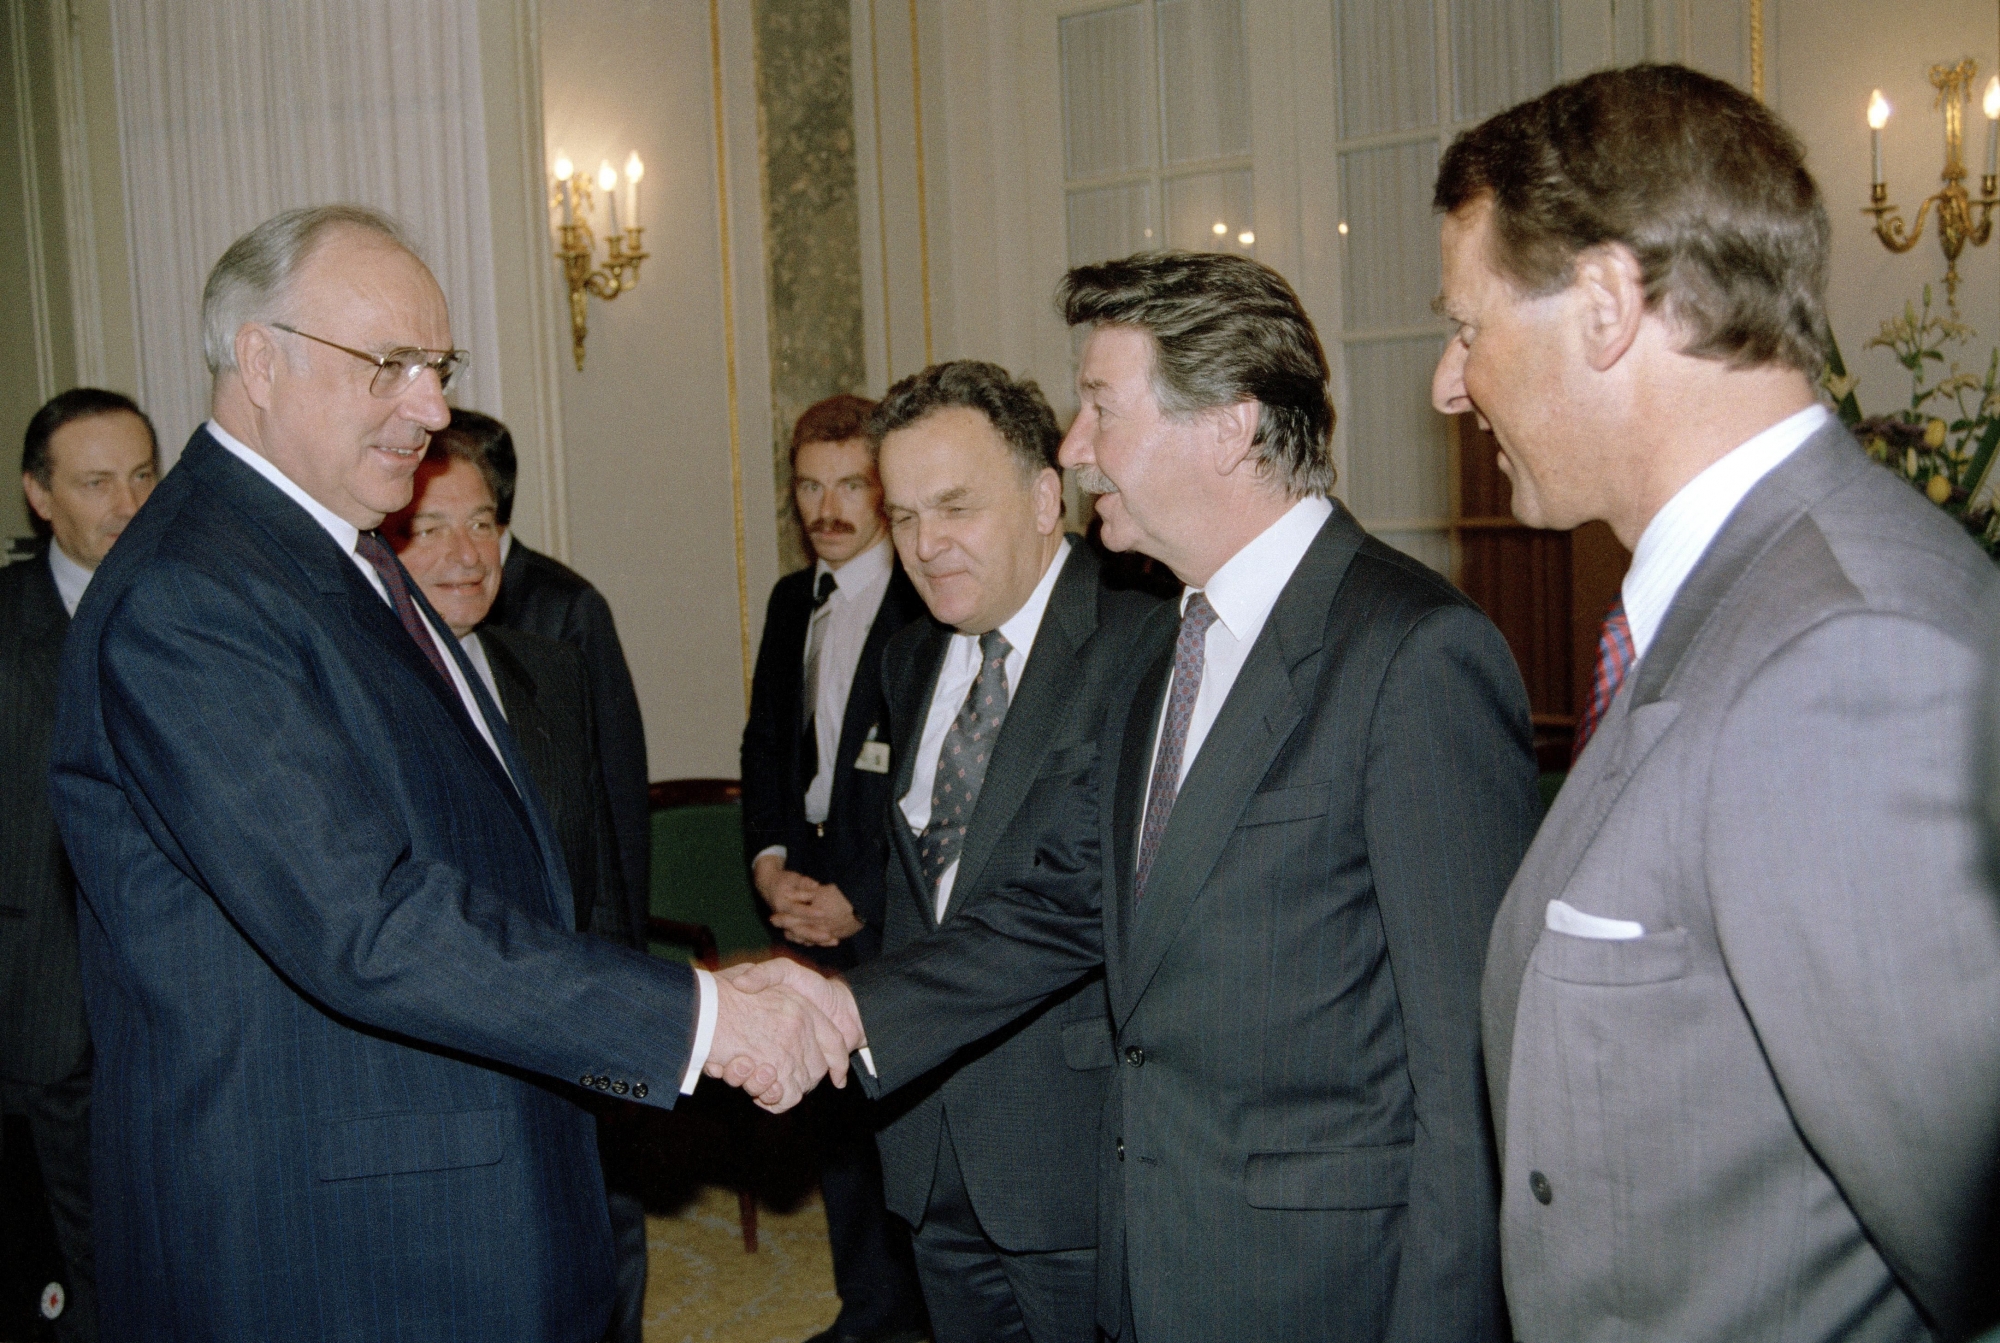 
Le socialiste neuchâtelois René Felber est entré au Conseil fédéral est entré au Conseil fédéral en 1988. Une année plus tard, en charge des Affaires étrangères, il reçoit le chancelier allemand Helmut Kohl, qui effectue une visite d’Etat en Suisse.